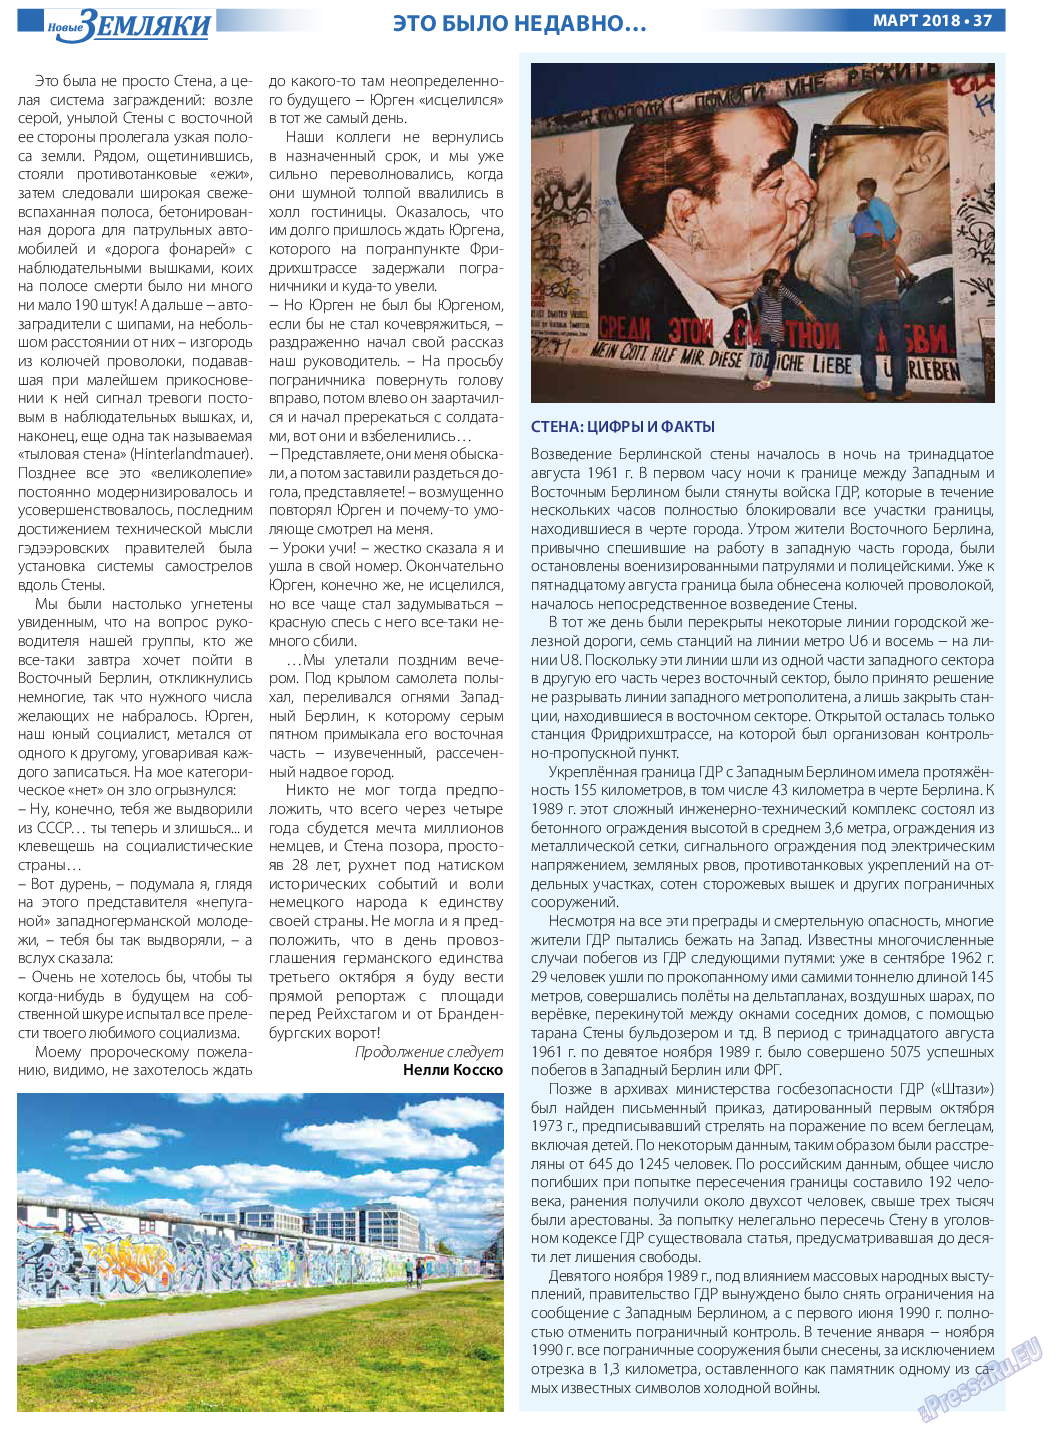 Новые Земляки, газета. 2018 №3 стр.37